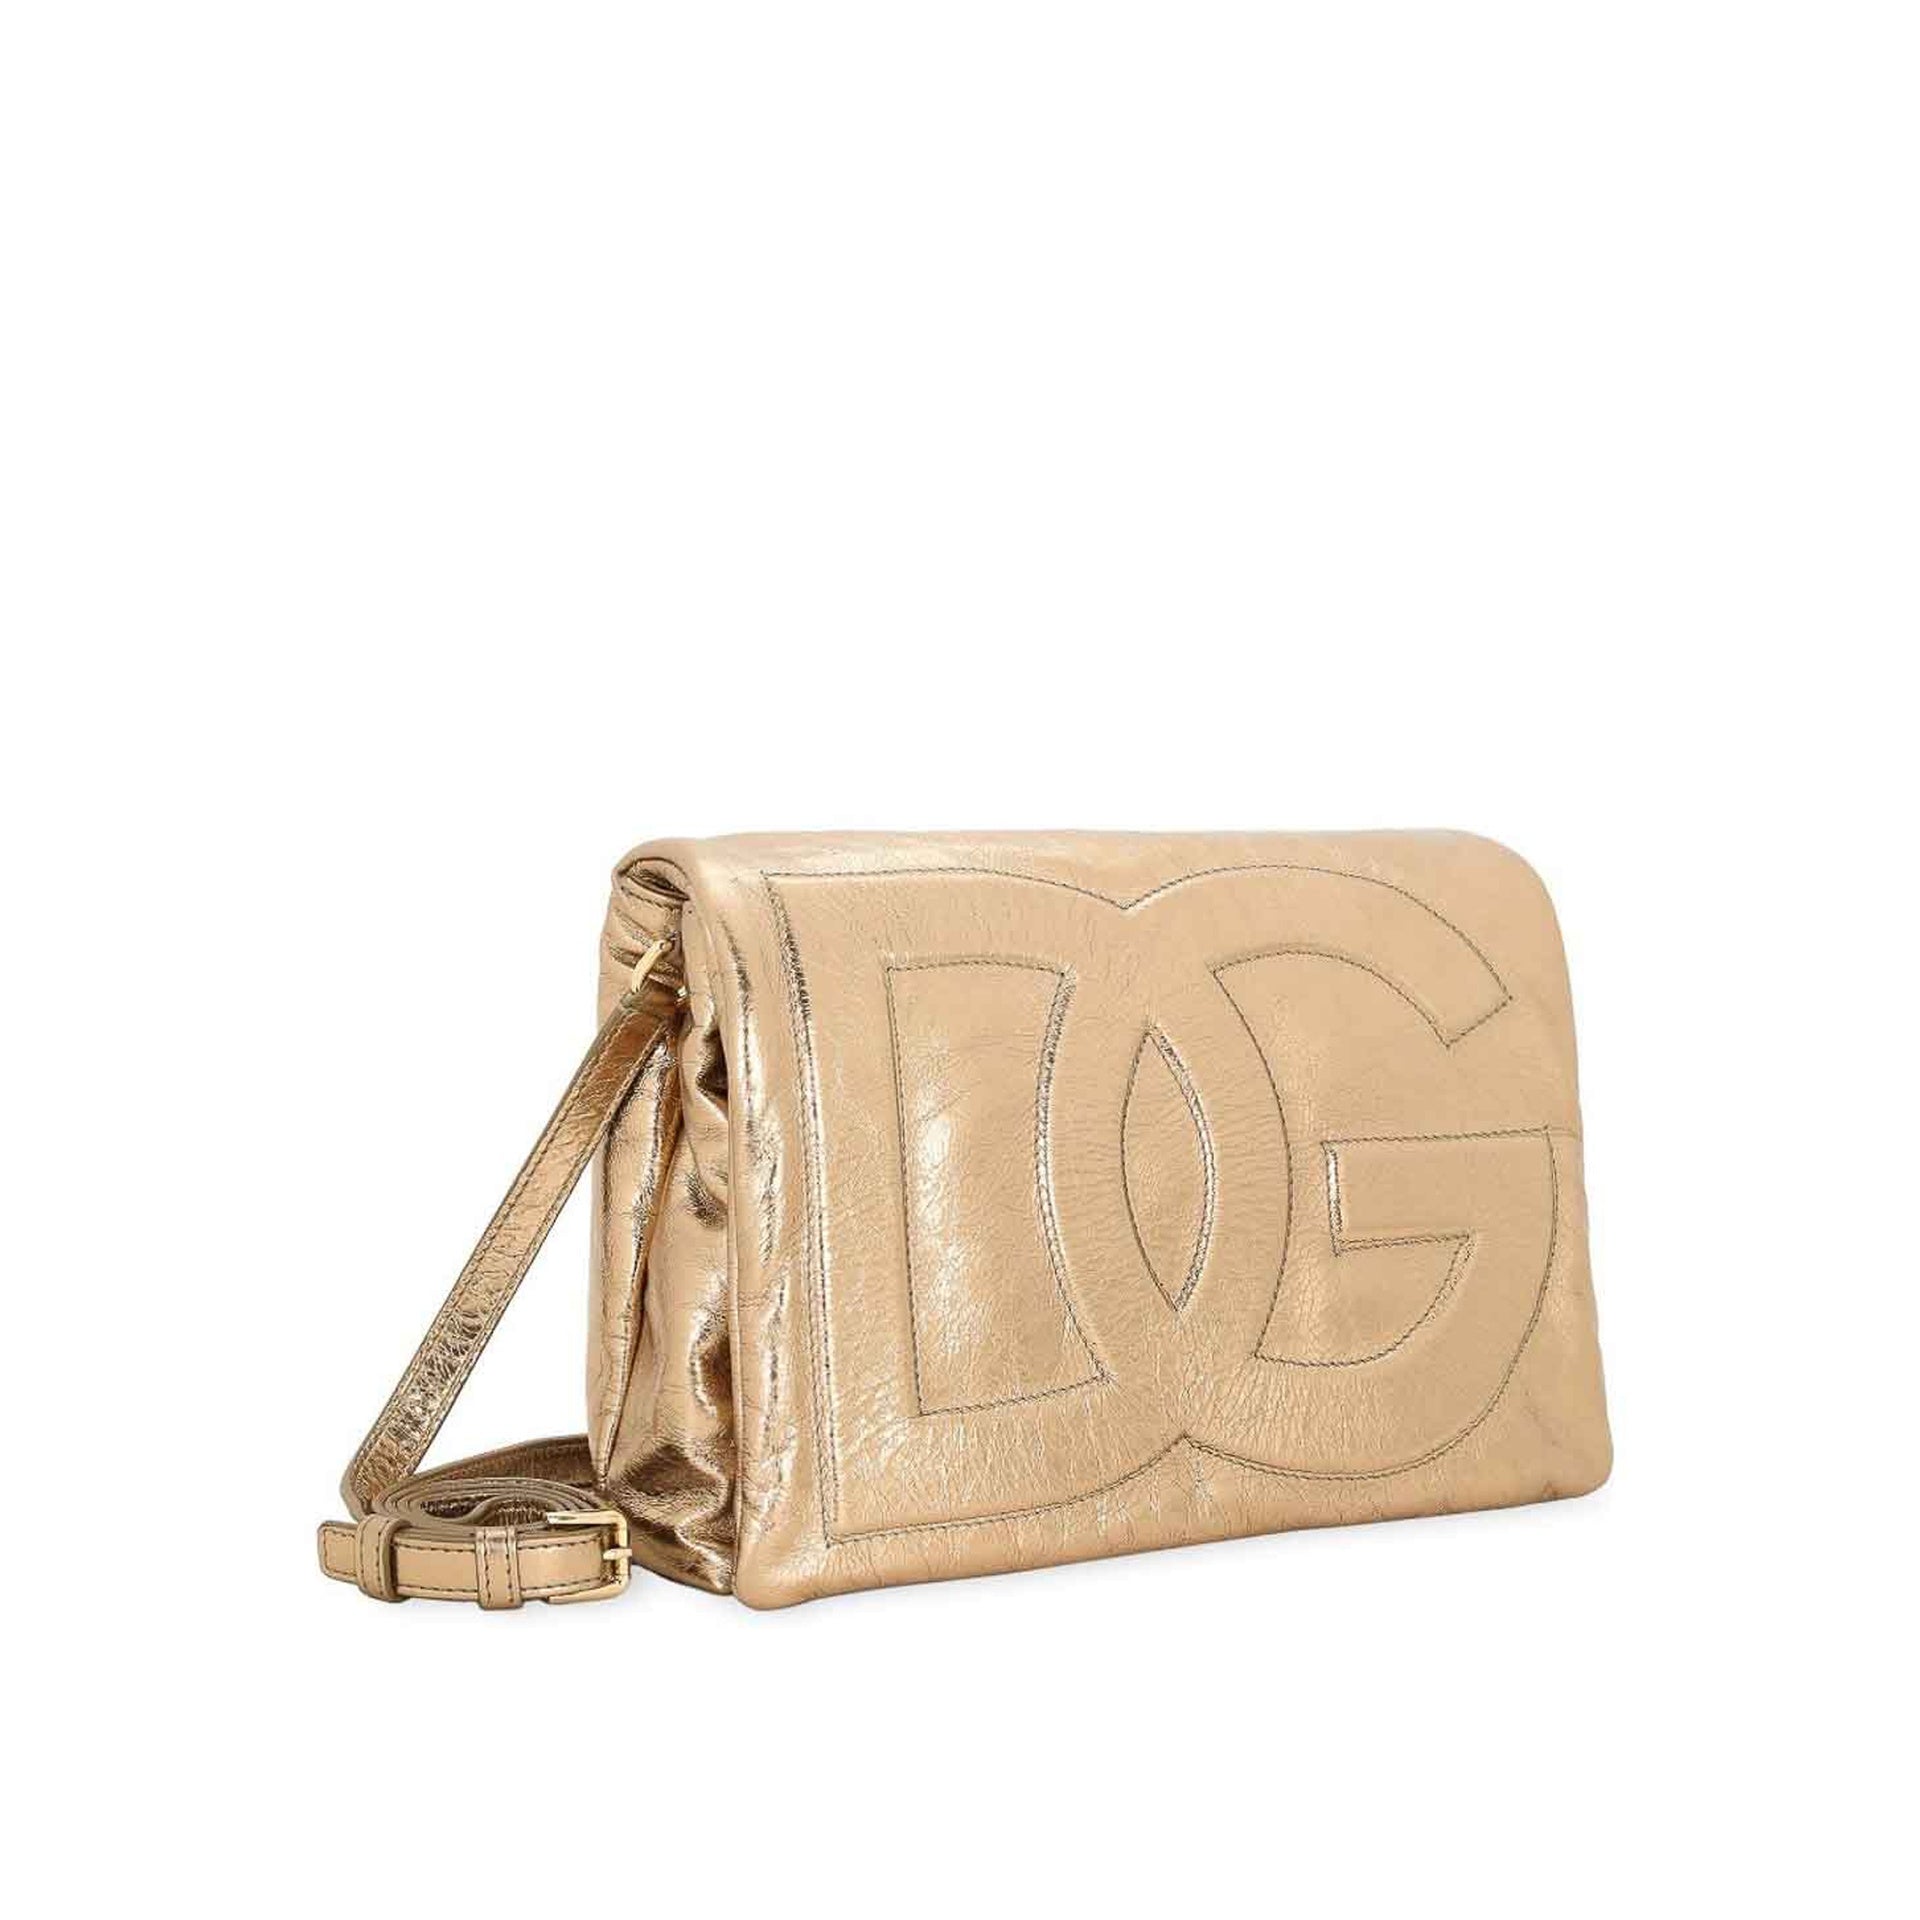 DOLCE-GABBANA-OUTLET-SALE-Dolce-Gabbana-Cracle-Shoulder-Bag-Taschen-GOLD-UNI-ARCHIVE-COLLECTION-2.jpg